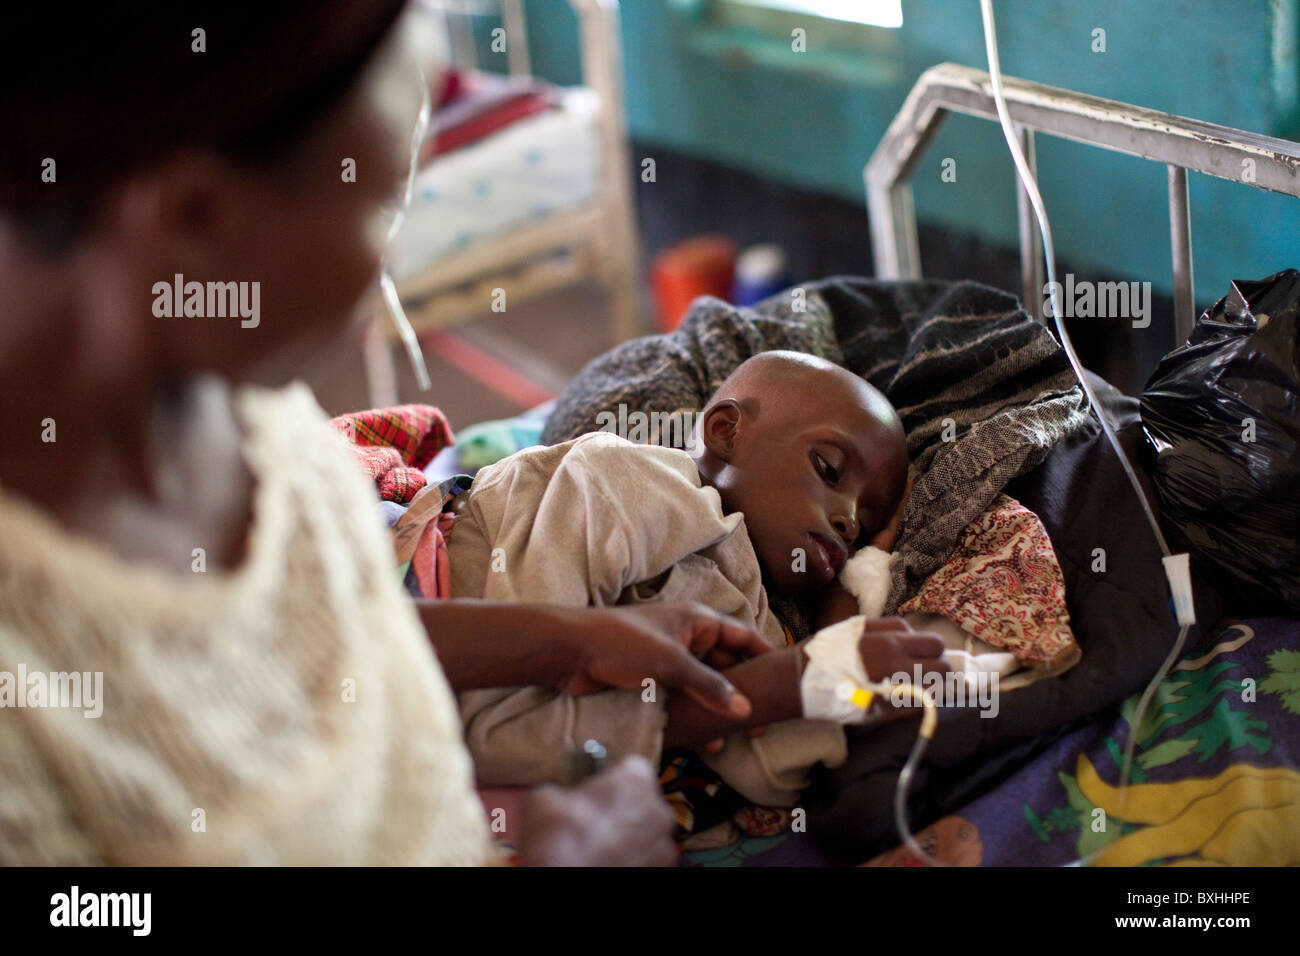 Un enfant meurt du SIDA reçoit un traitement médical dans un hôpital d'Amuria, Ouganda, Afrique de l'Est. Banque D'Images